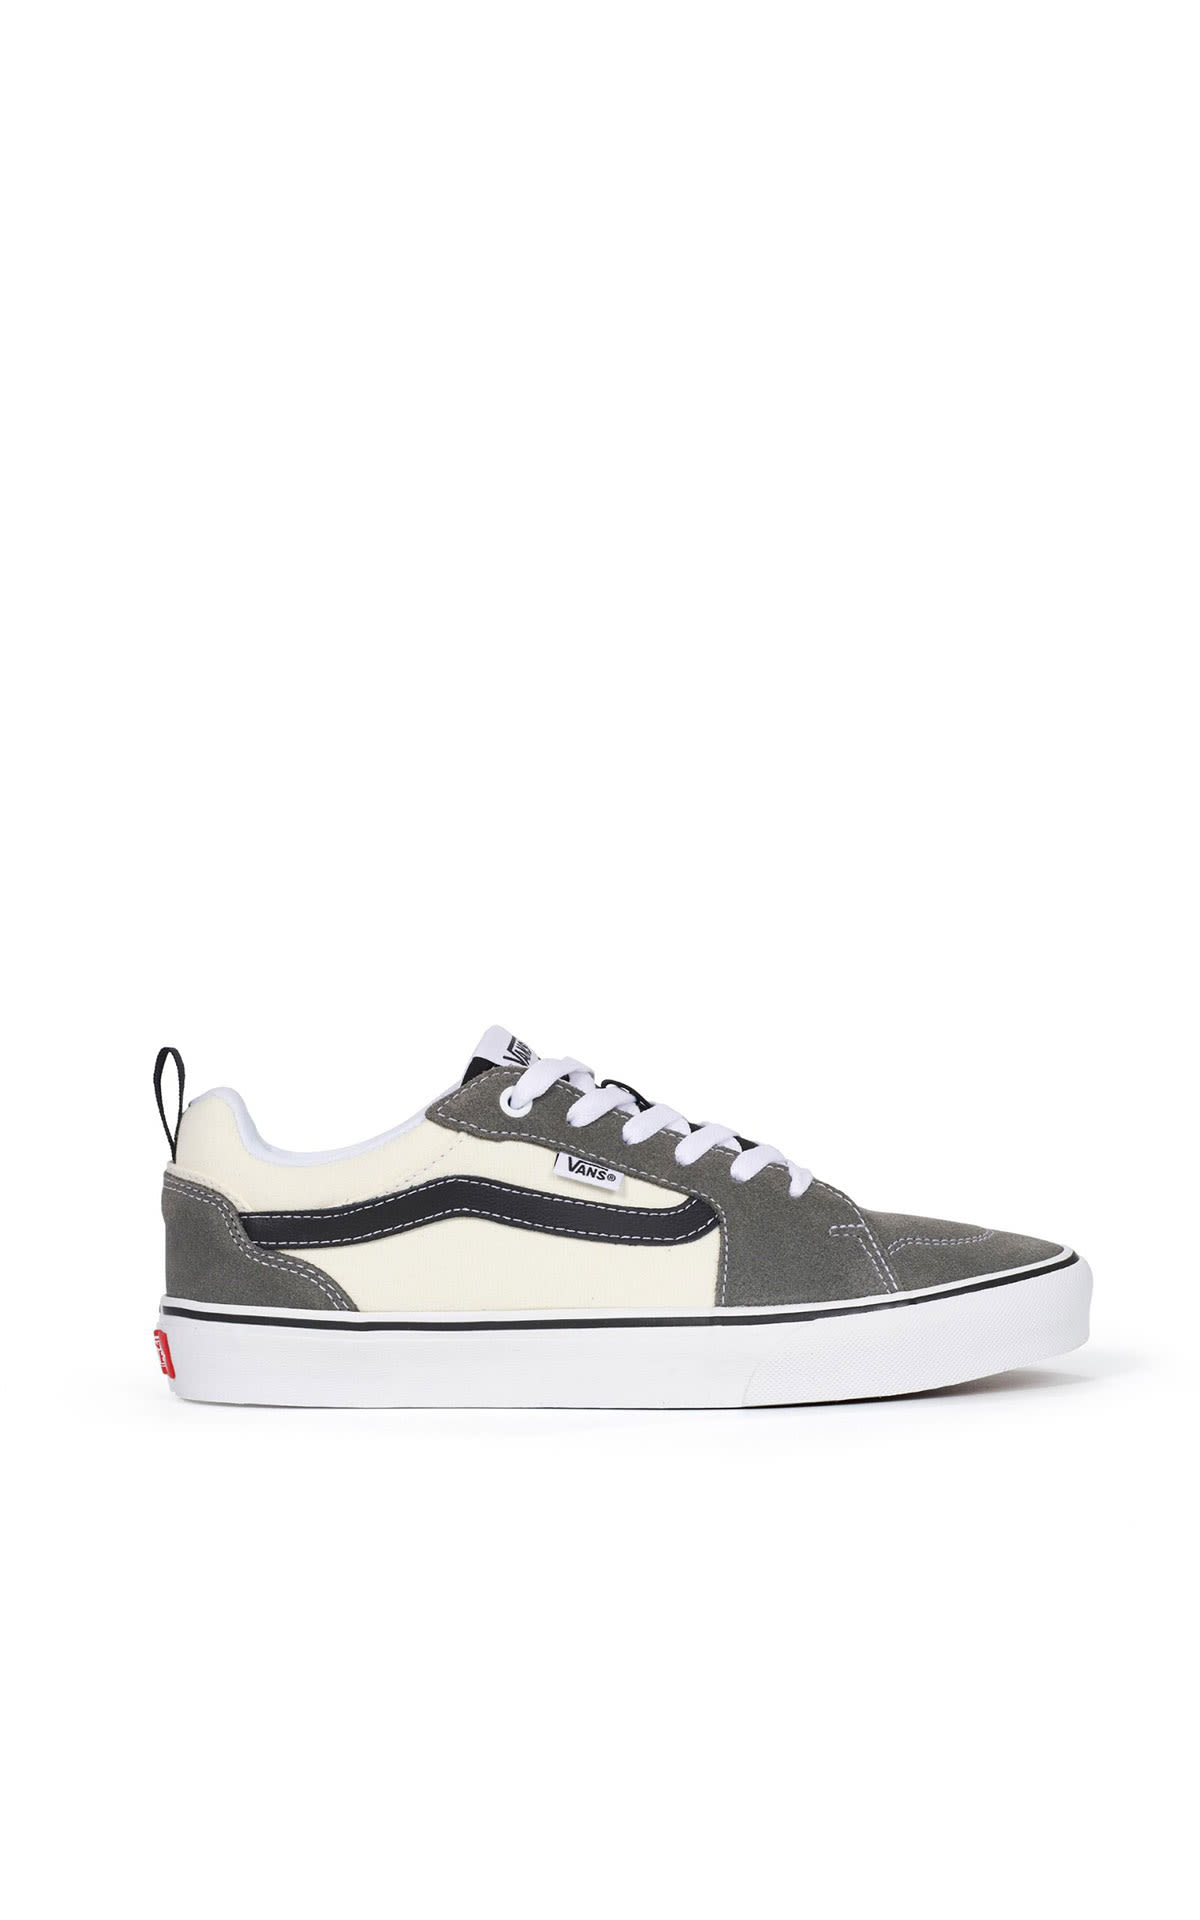 Beige and gray sneakers Vans